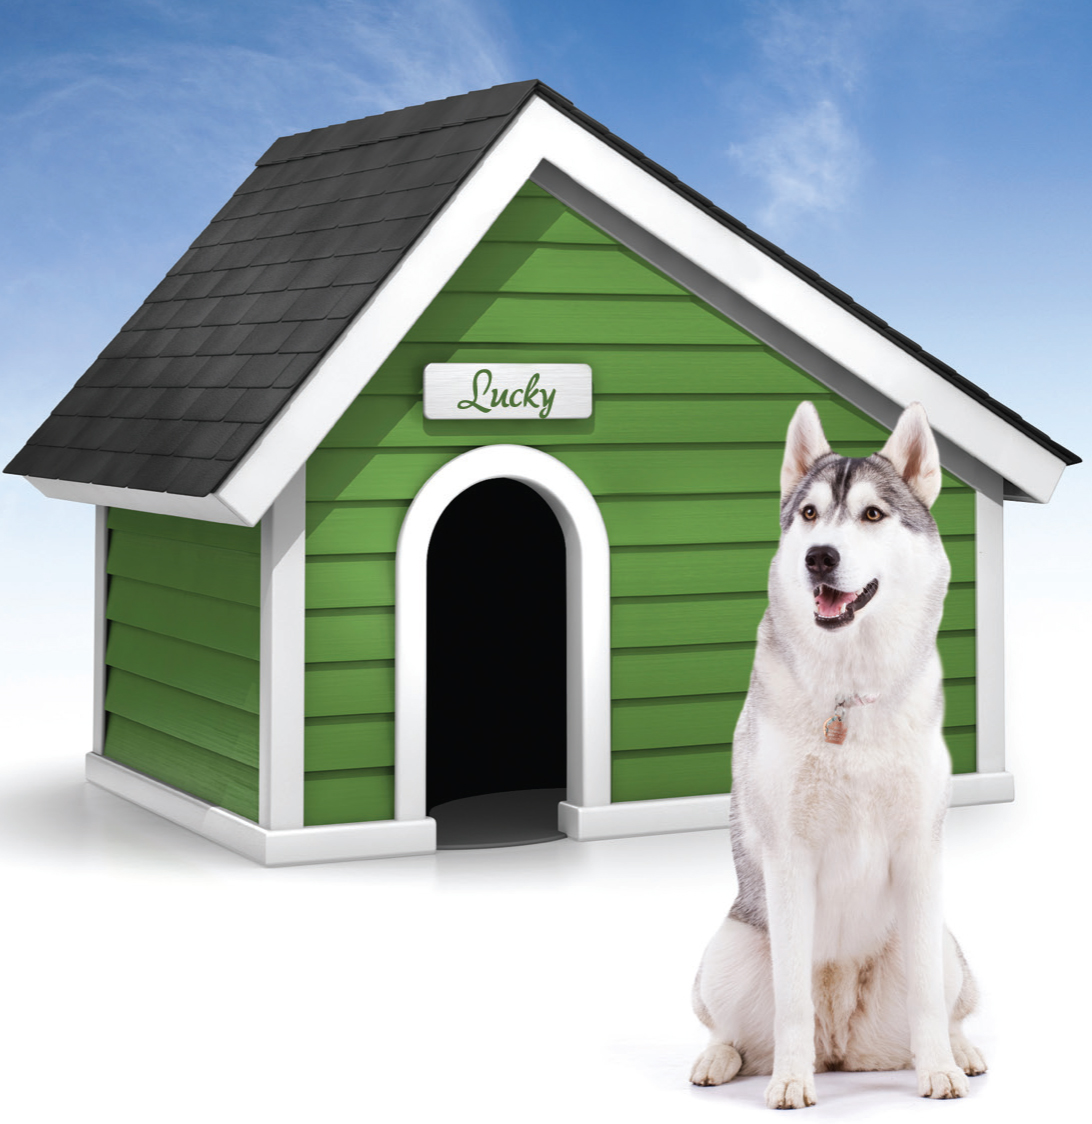 Дог хаус дайс демо dog houses info. Будка для собаки хаски. Дом для собаки. Красивые собачьи будки. Собака с конурой.